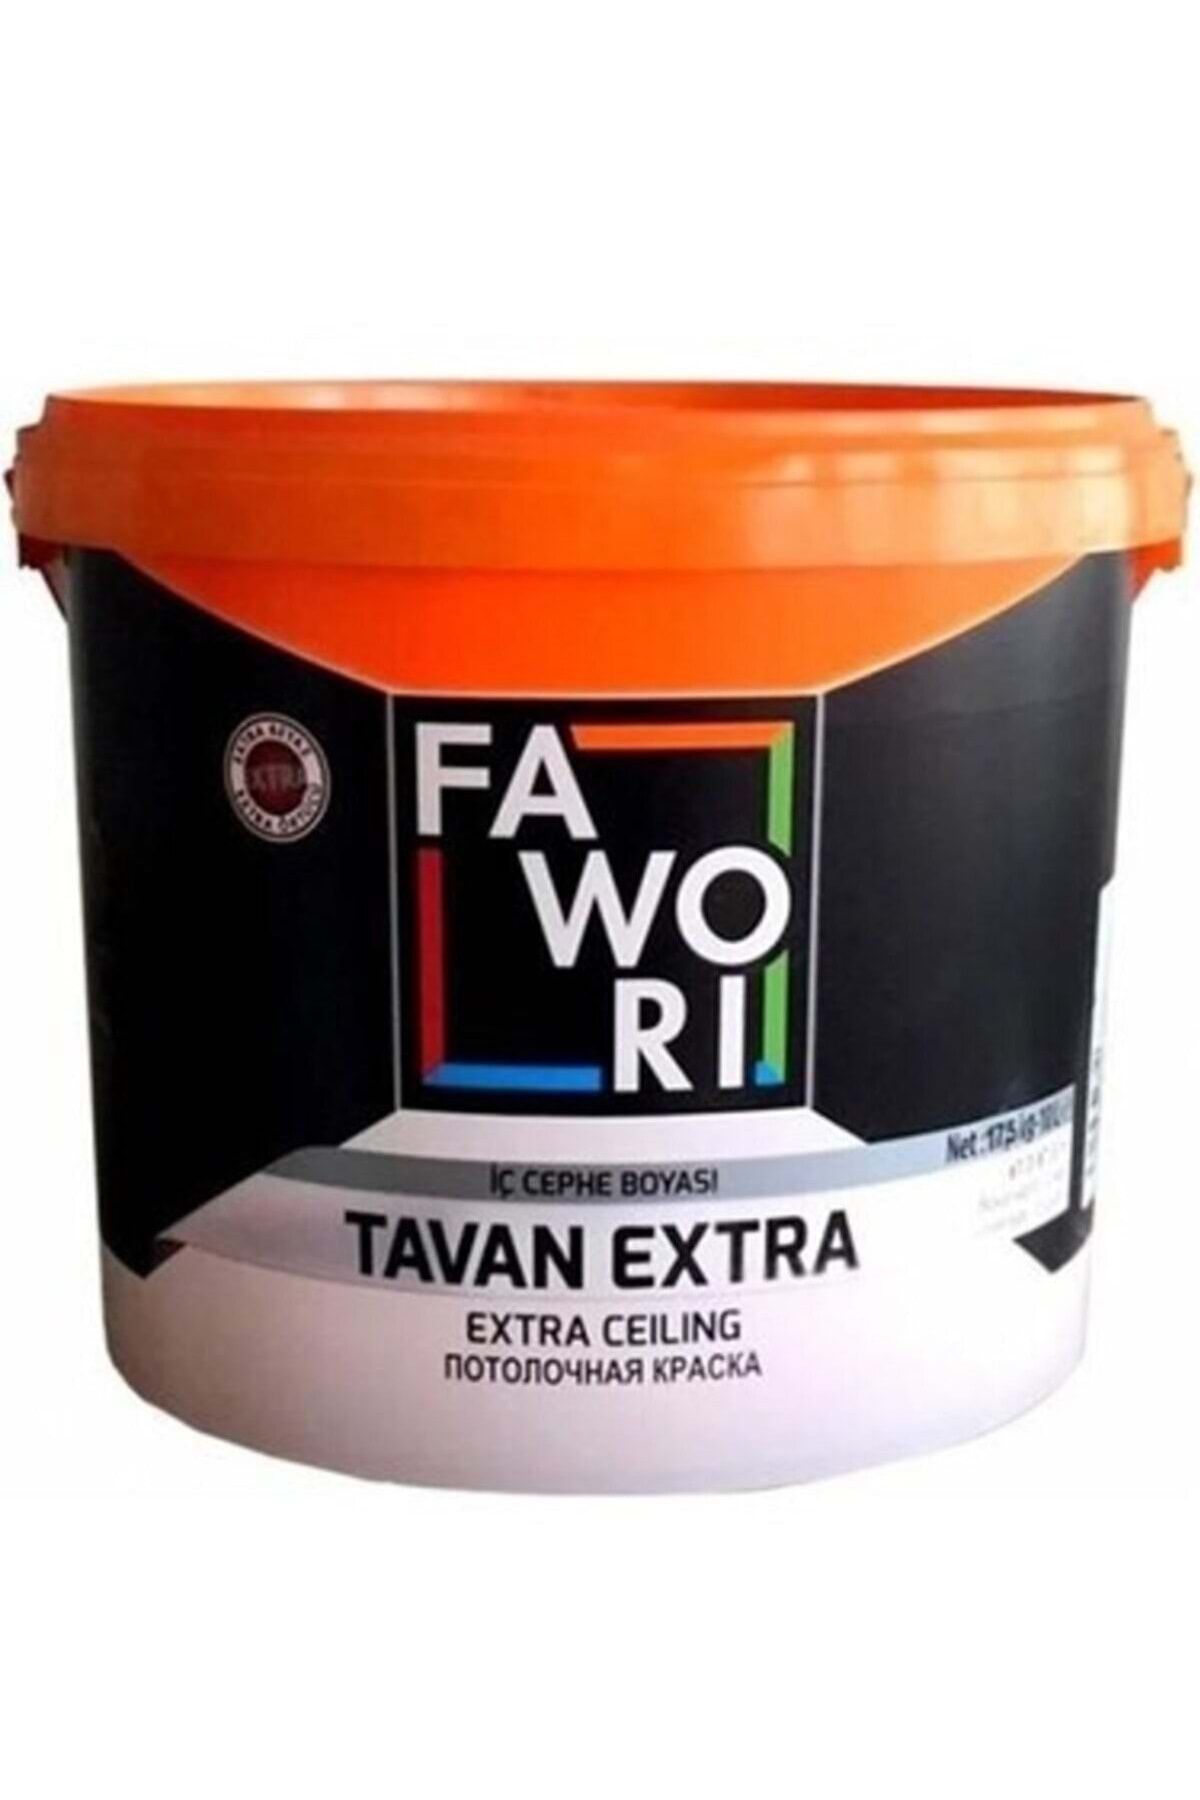 Fawori Tavan Extra 17.5 kg